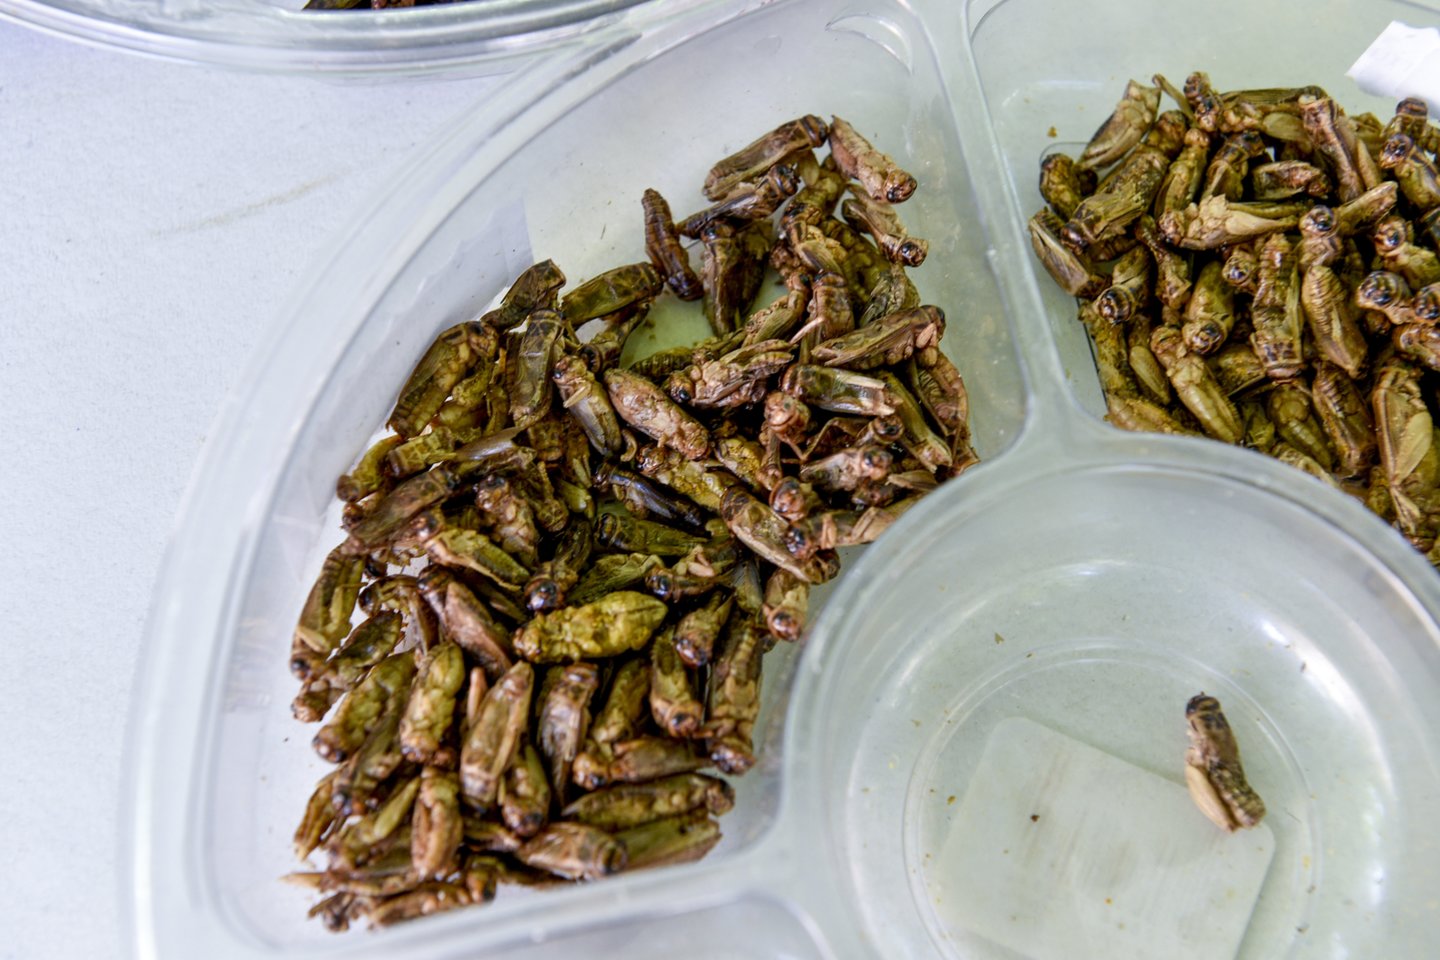 Europos Komisija šiuo metu nagrinėja dar aštuonias paraiškas dėl leidimo naudoti vabzdžius maistui.<br>V.Ščiavinsko nuotr.